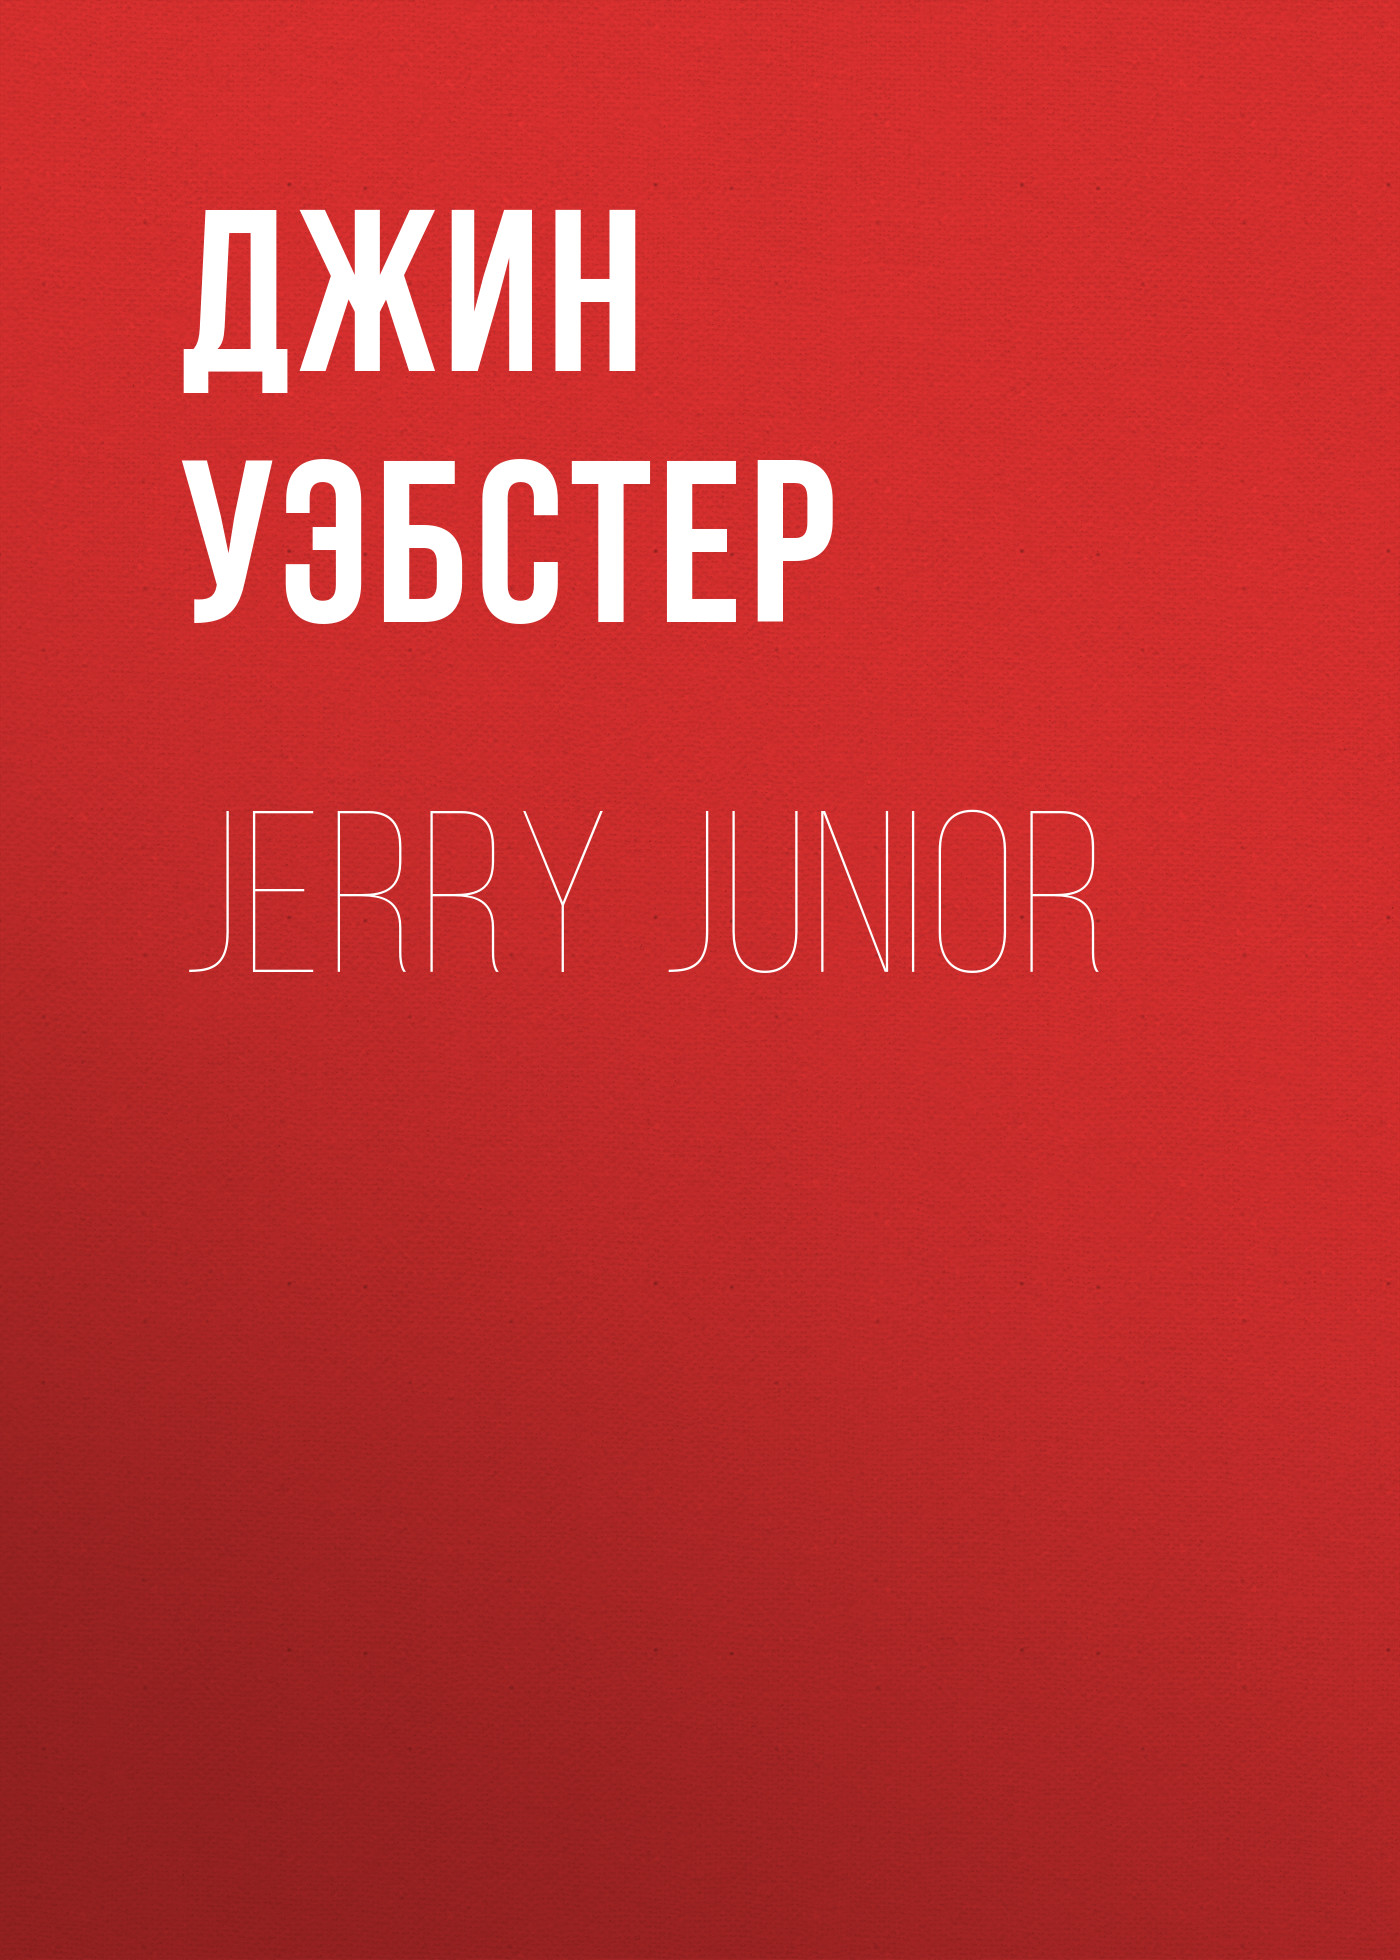 Книга Jerry Junior из серии , созданная Джин Уэбстер, может относится к жанру Зарубежная старинная литература, Зарубежная классика, Зарубежные любовные романы. Стоимость электронной книги Jerry Junior с идентификатором 34842190 составляет 0 руб.